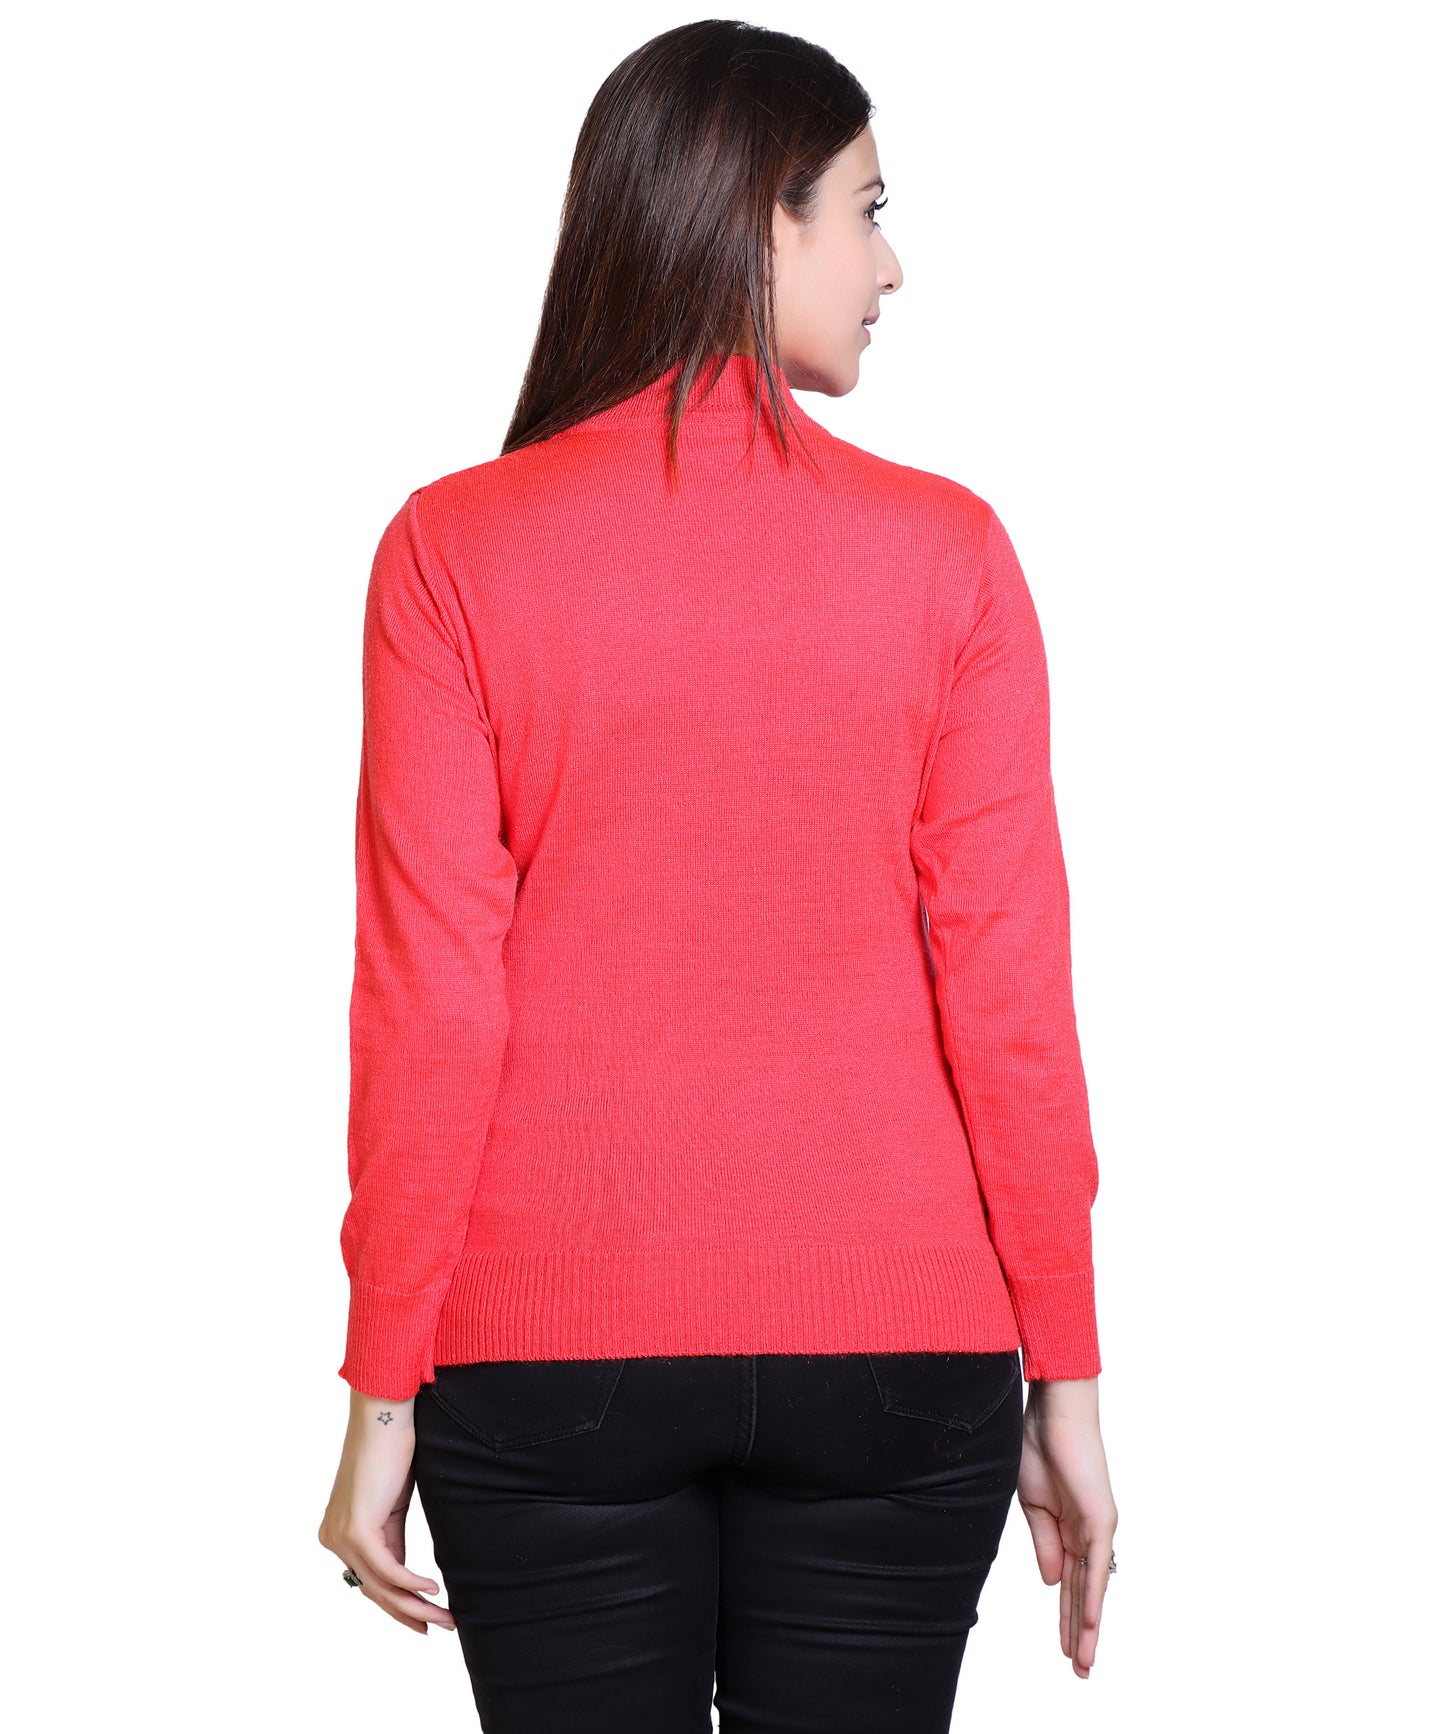 Women's Solid Woolen Full Sleeves Sweater